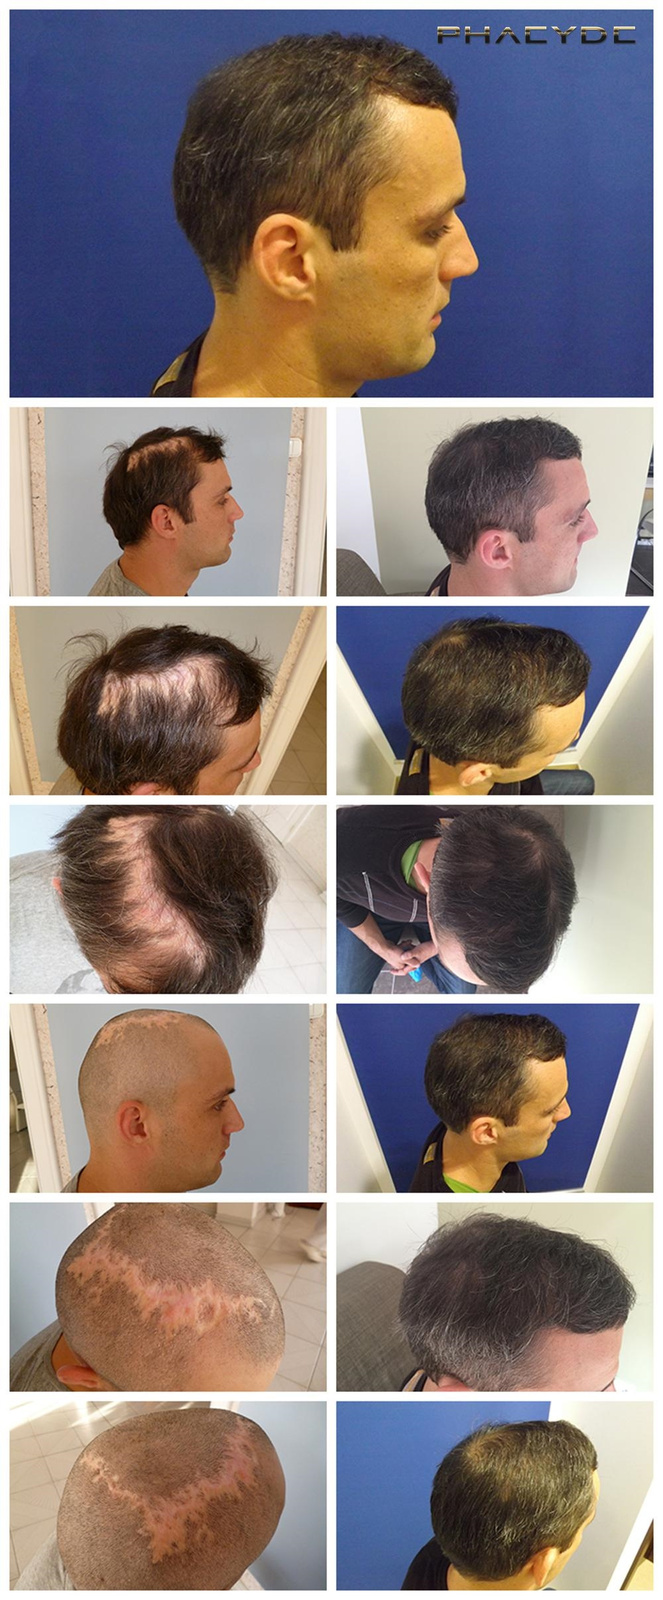 Hair transplant&nbsp;before&nbsp;after&nbsp;photos&nbsp;and&nbsp